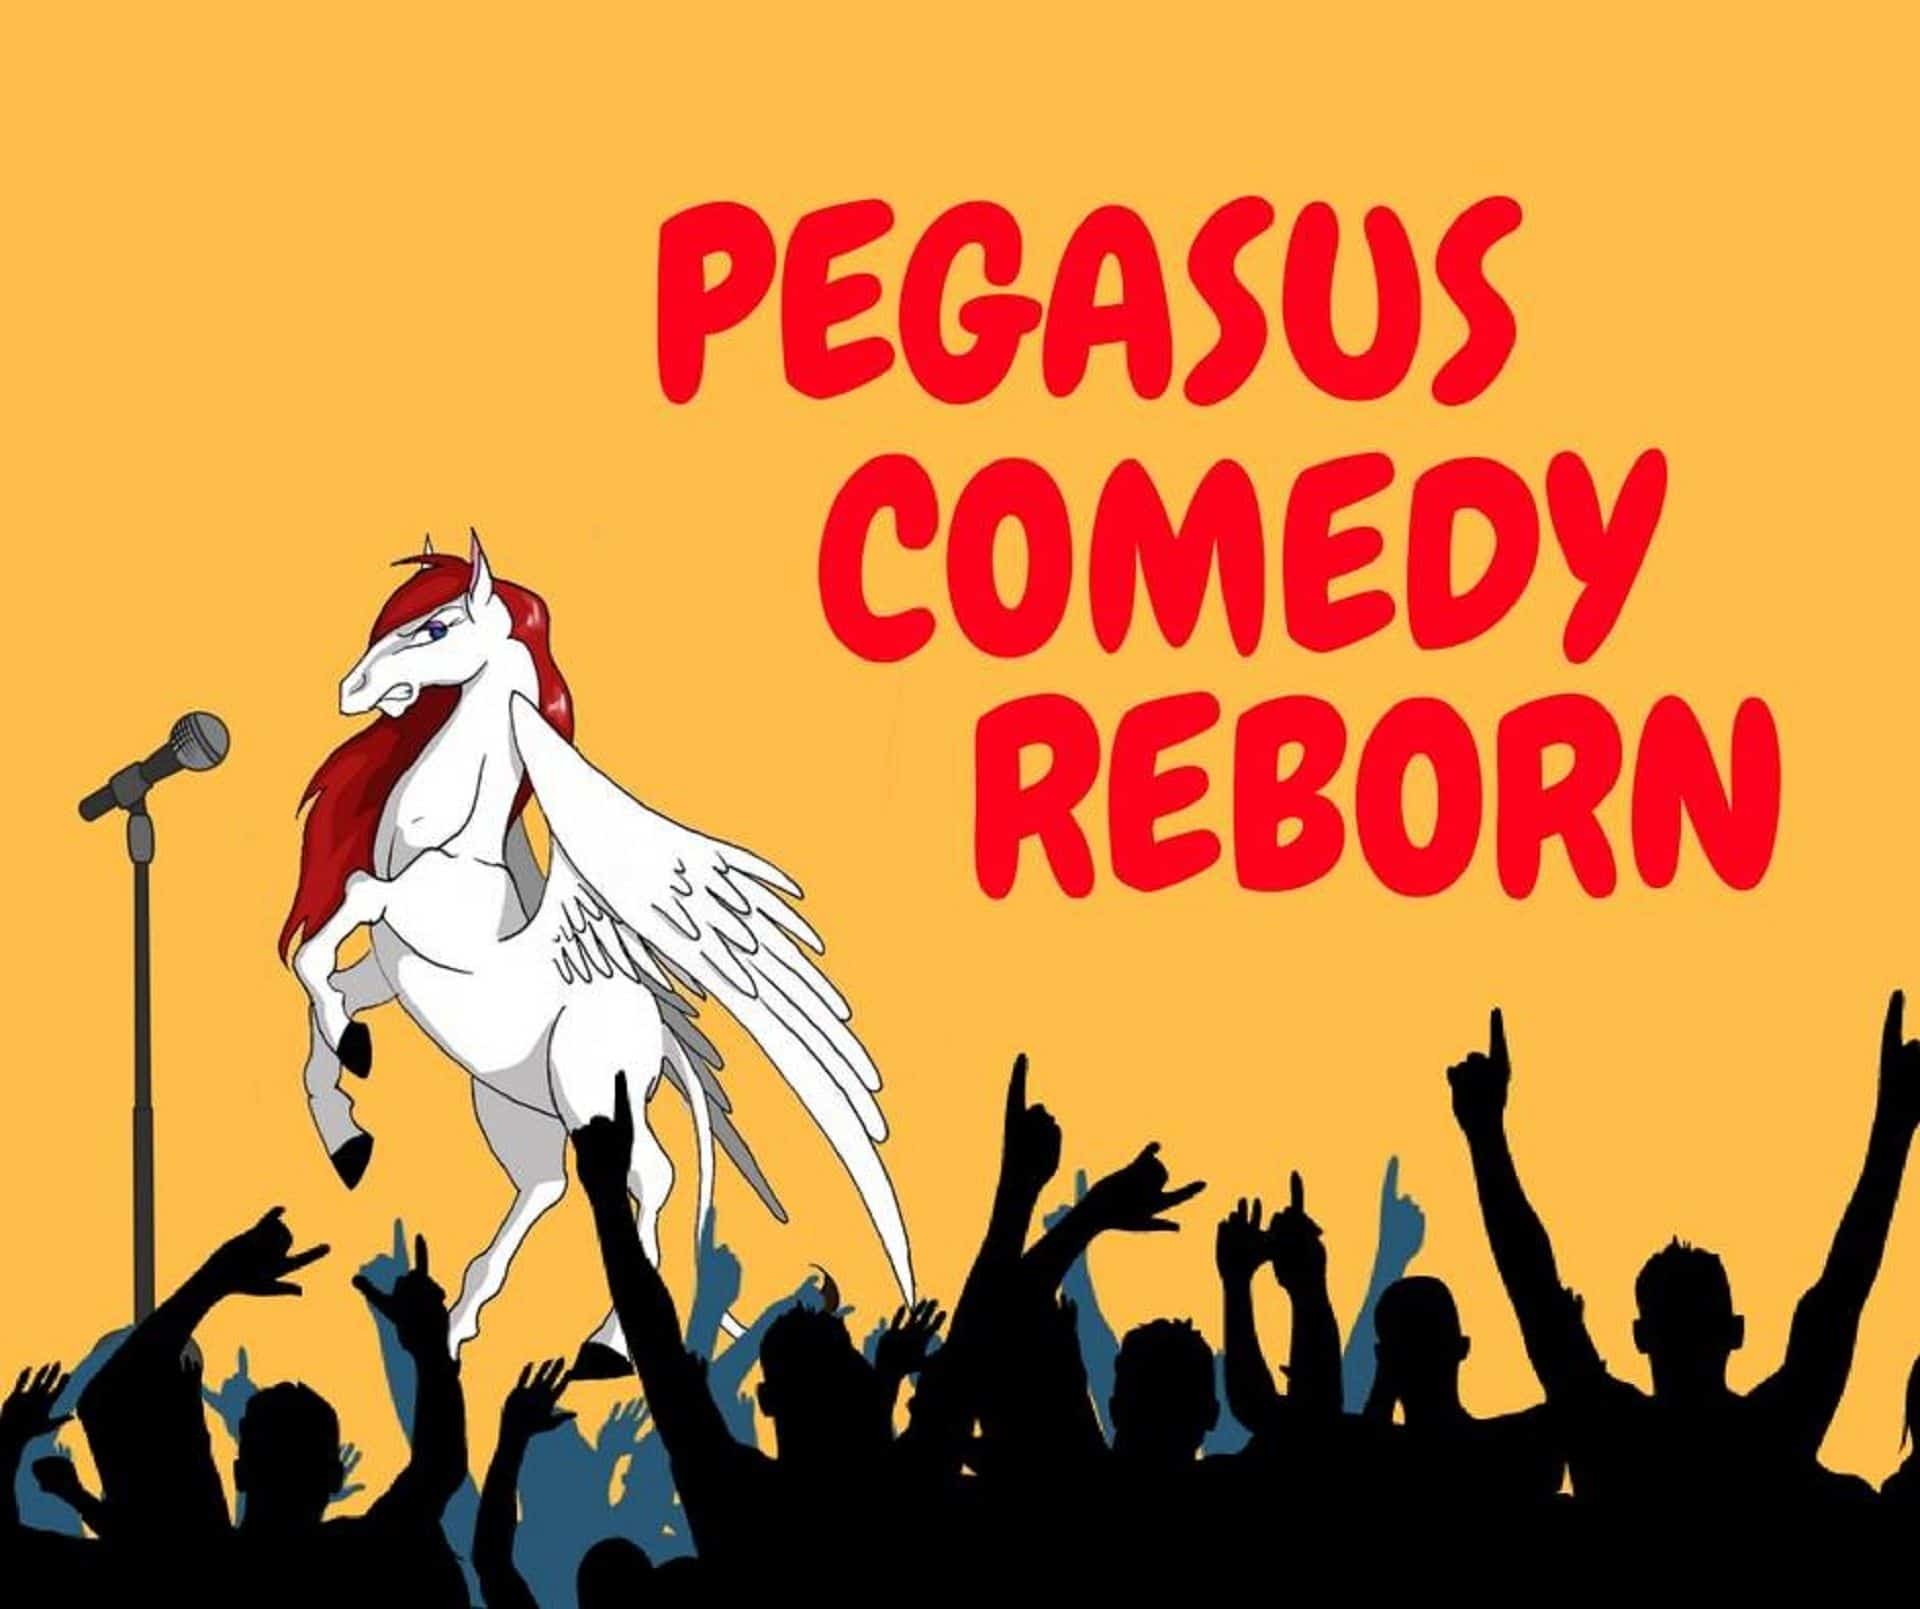 Pegasus Comedy in UK